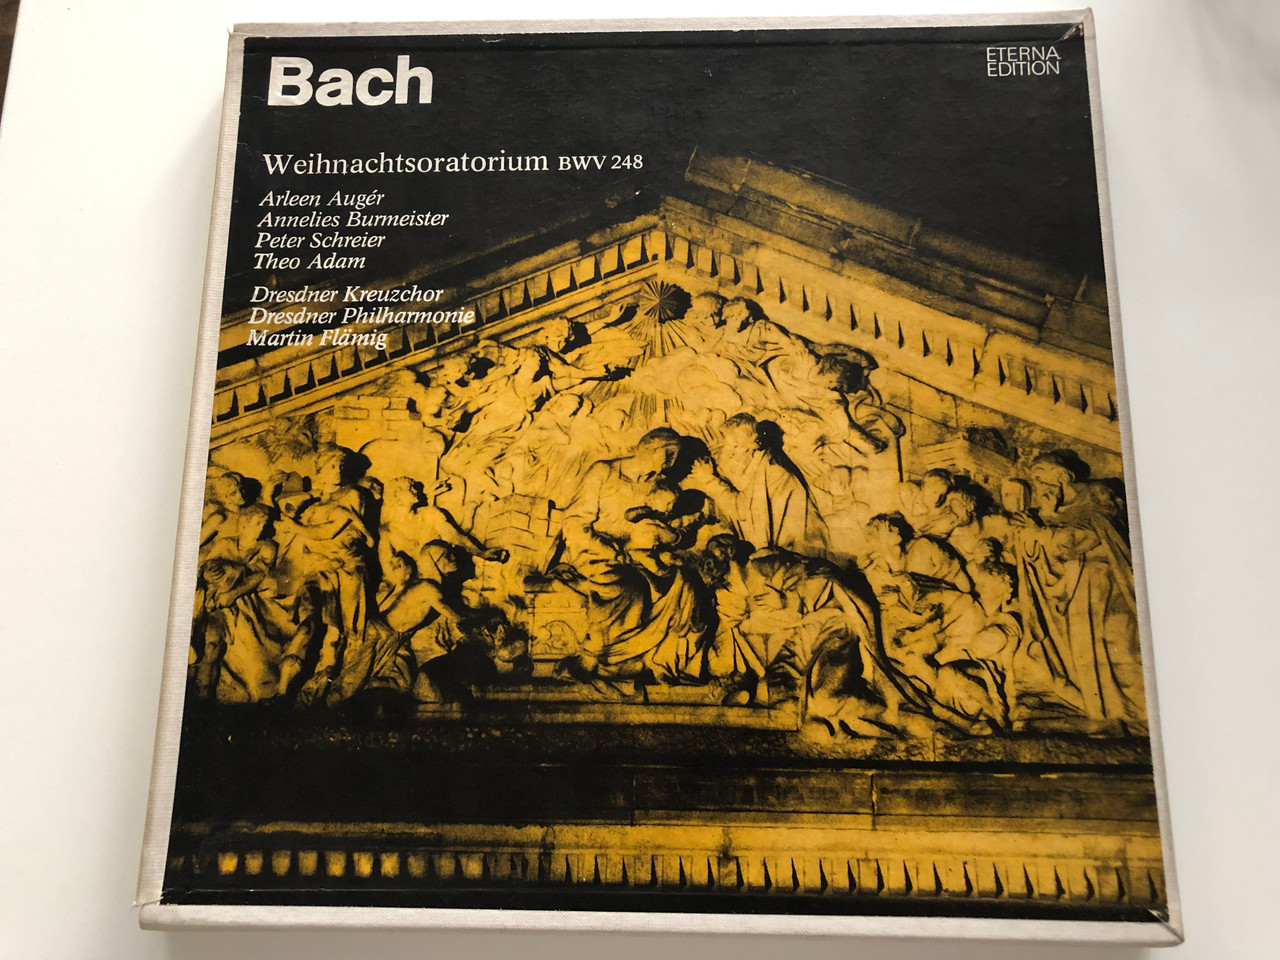 Bach - Weihnachtsoratorium BWV 248 / Arleen Augér, Annelis Burmeister,  Peter Schreier, Theo Adam / Dresdner Kreuzchor, Dresdner Philharmonie,  Martin Flämig / ETERNA Edition / ETERNA 3x LP Stereo / 8 25 084-087 -  bibleinmylanguage